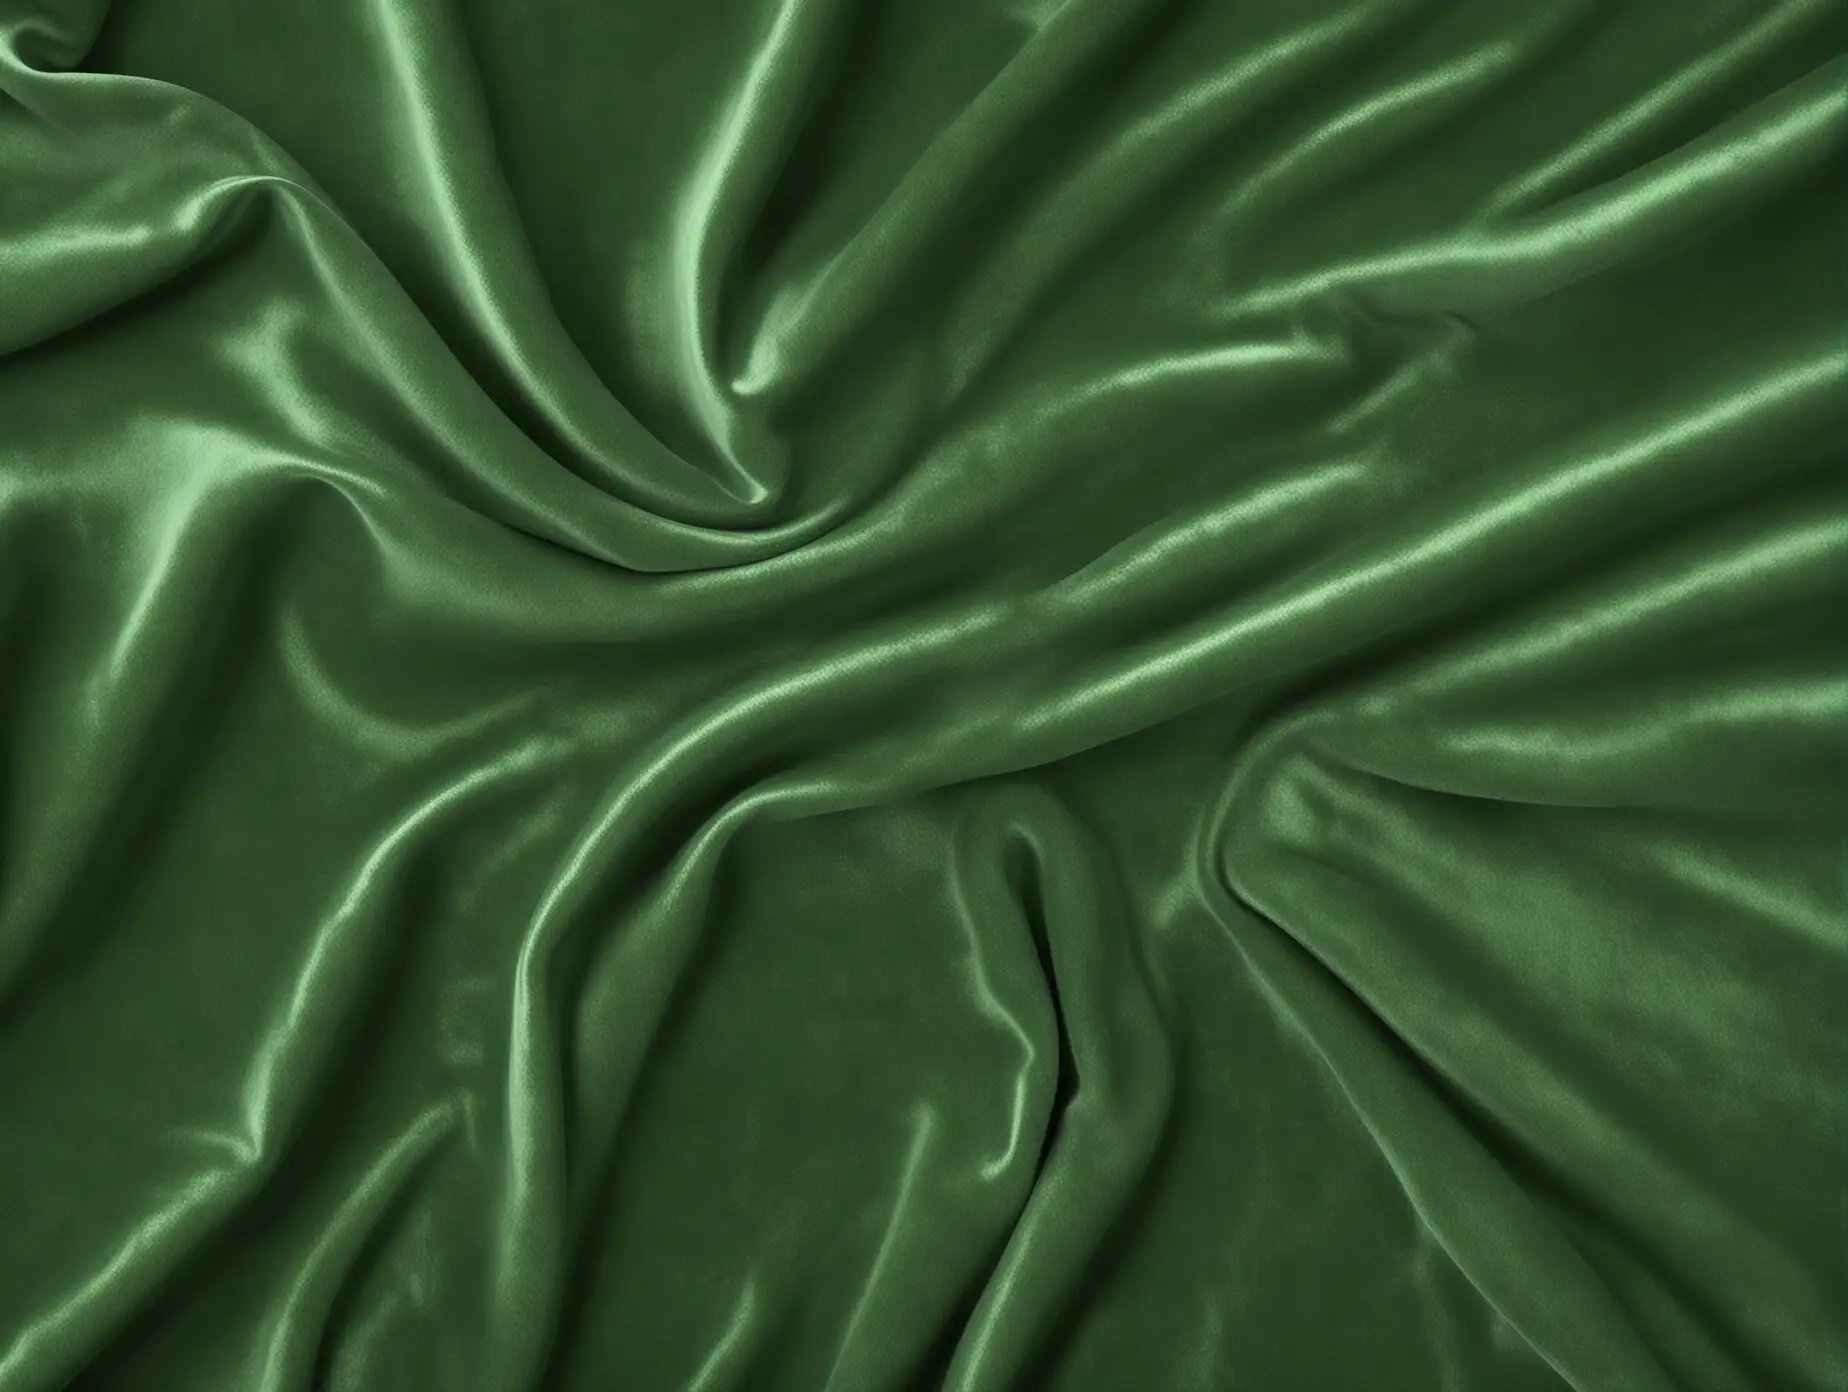 hyperrealistic green velvet texture